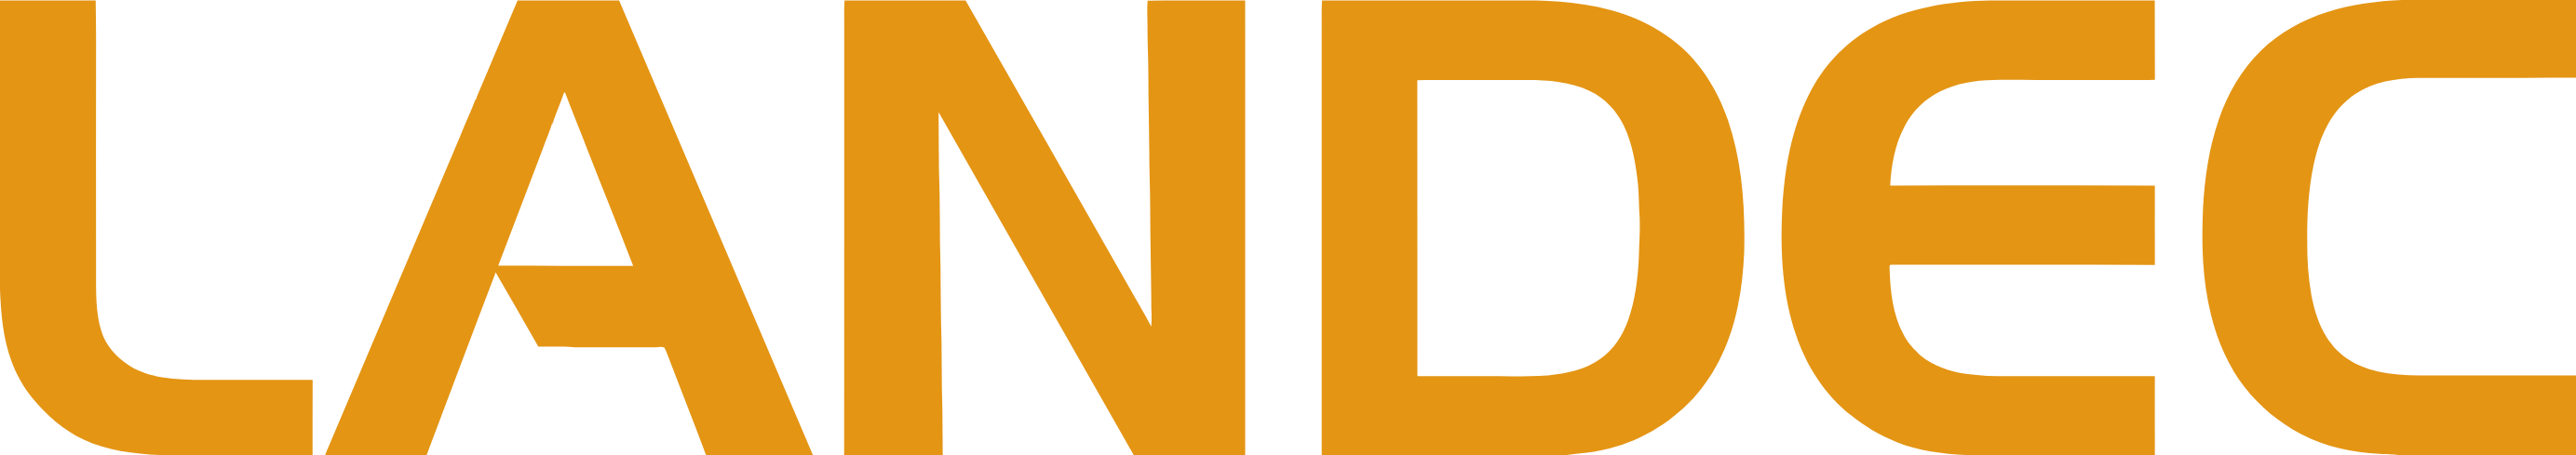 Landec logo large (transparent PNG)